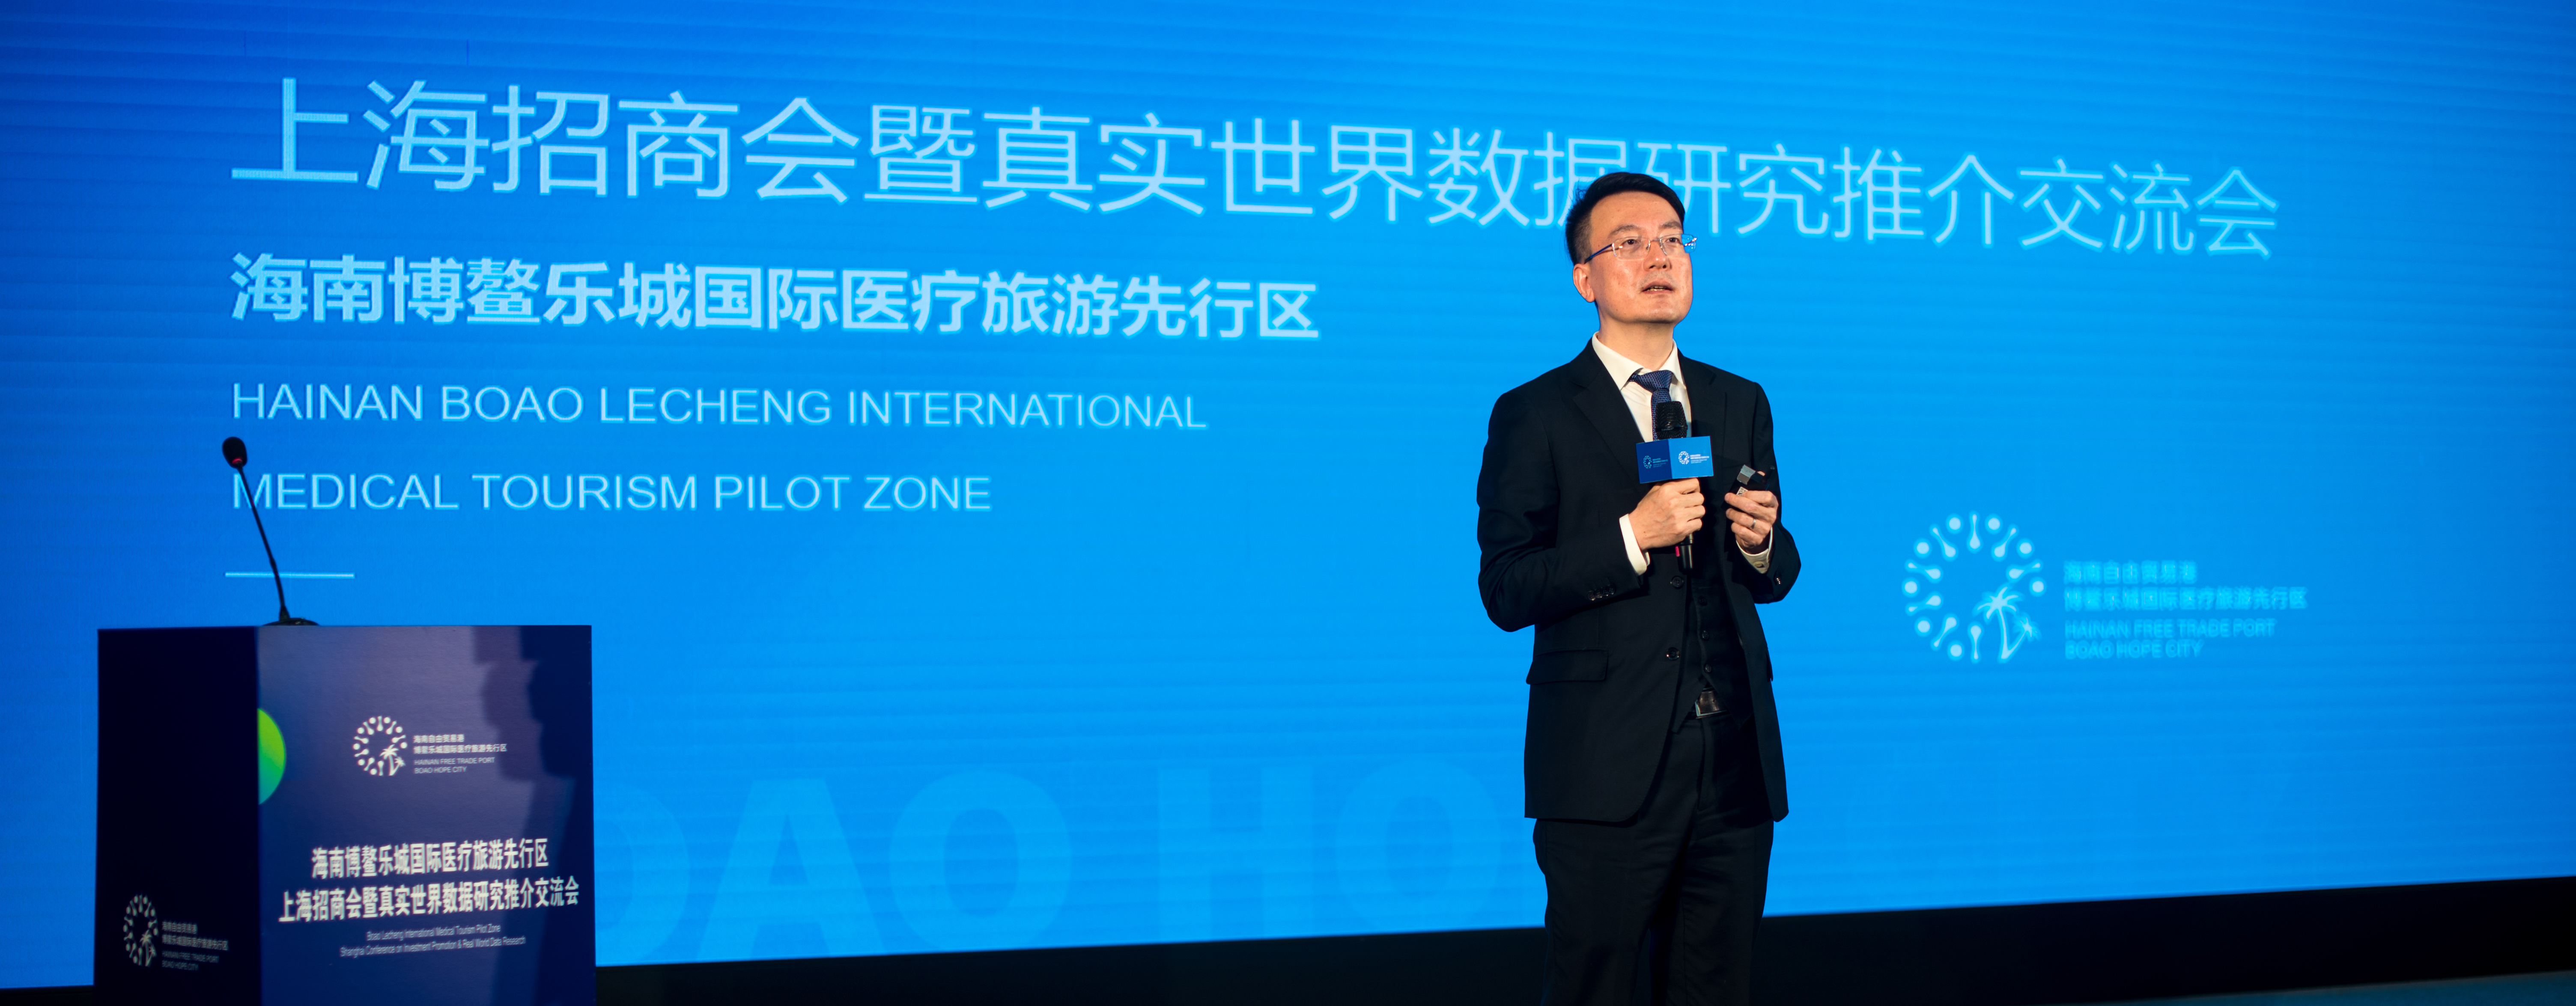 イノベーション薬・医療機械企業の62社、有名な病院の12院、5庁・局、楽城では成功して上海投資促進会議を行われた